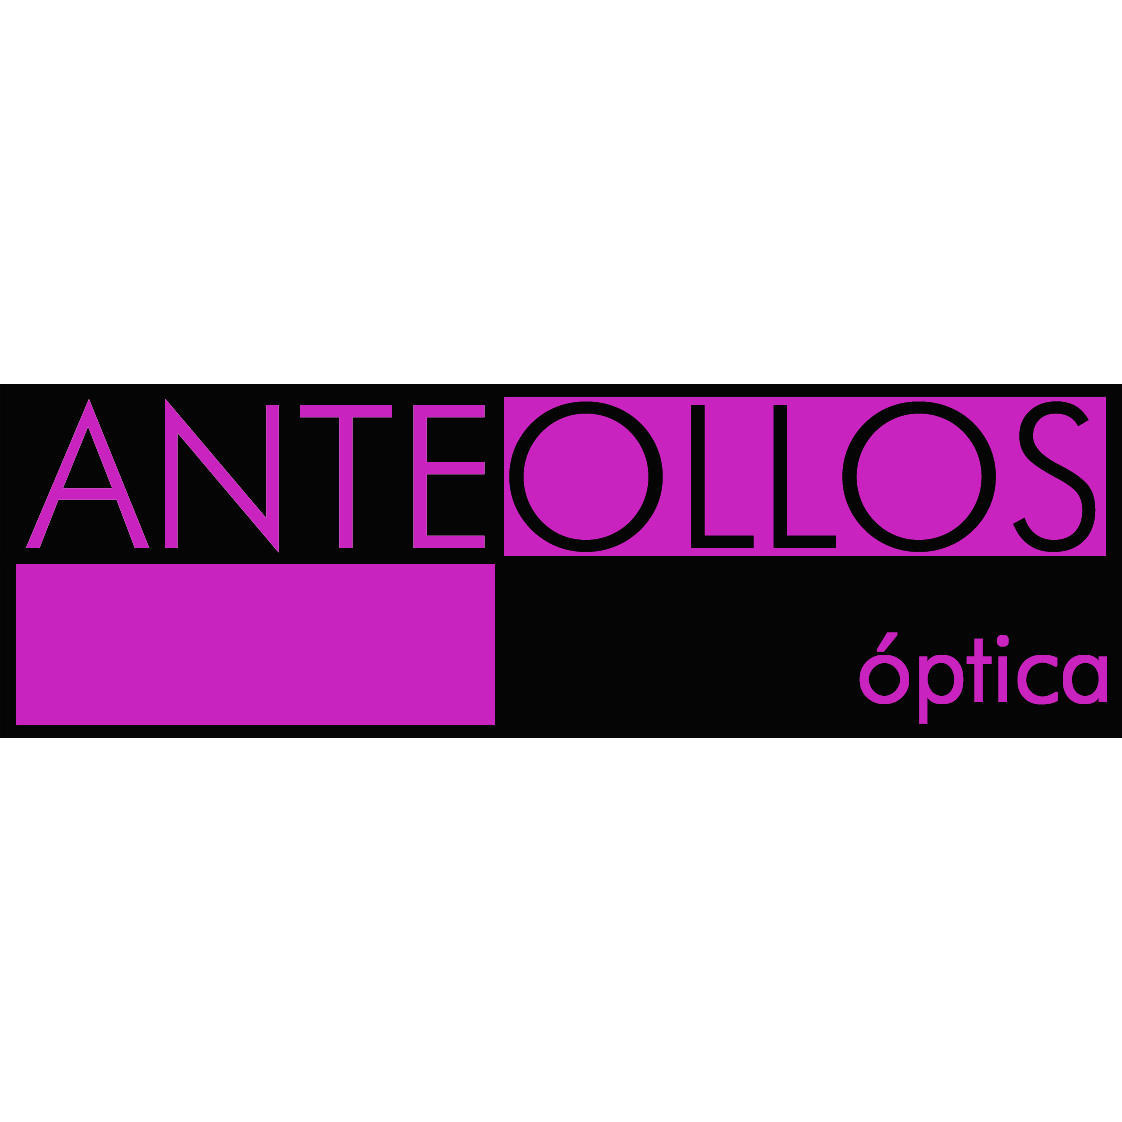 Óptica Anteollos Logo